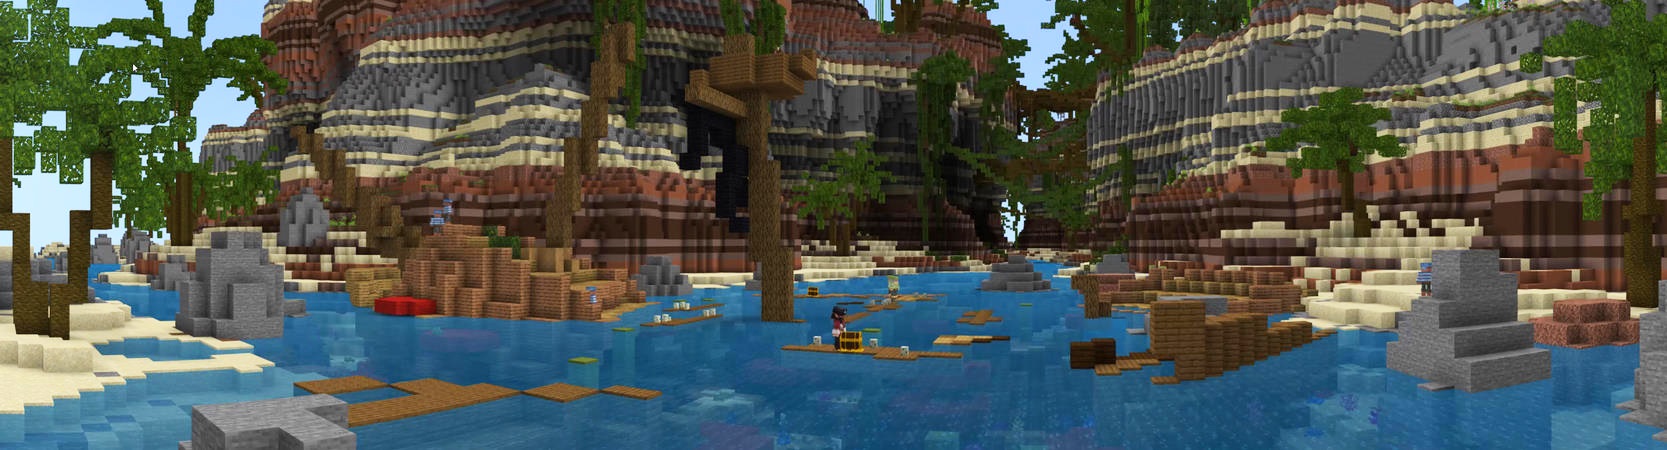 Survival Island In Minecraft Marketplace Minecraft